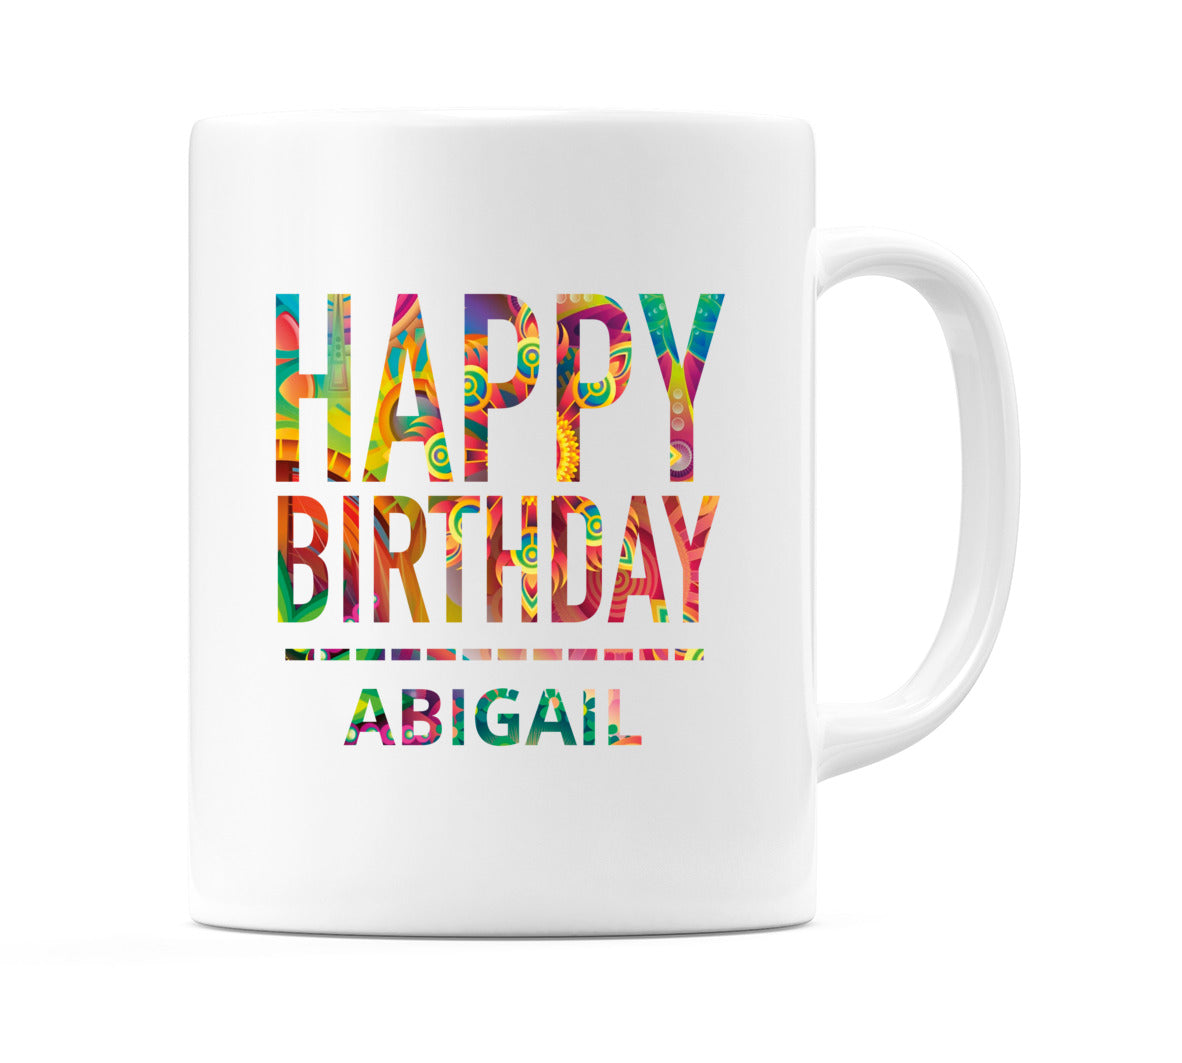 Happy Birthday Abigail (Tie Dye Effect) Mug Cup by WeDoMugs